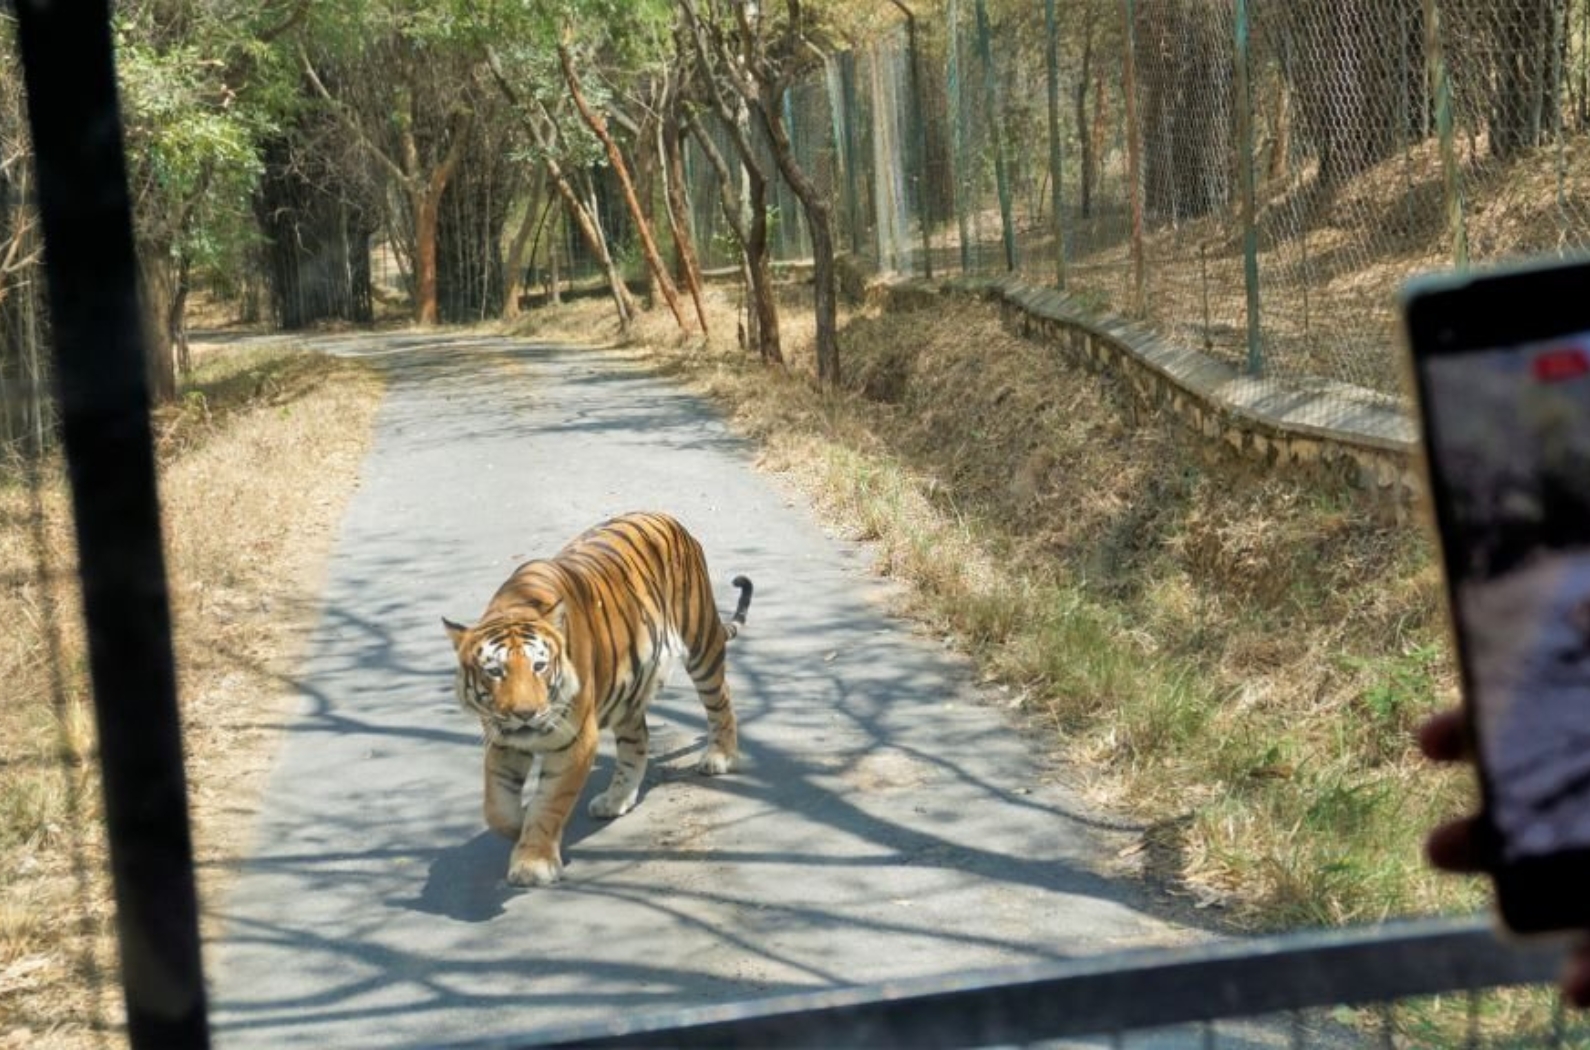 Sighting of Tiger during Safari trip in Bannerghatta Biological Park, Bangalore, Karnataka, India.